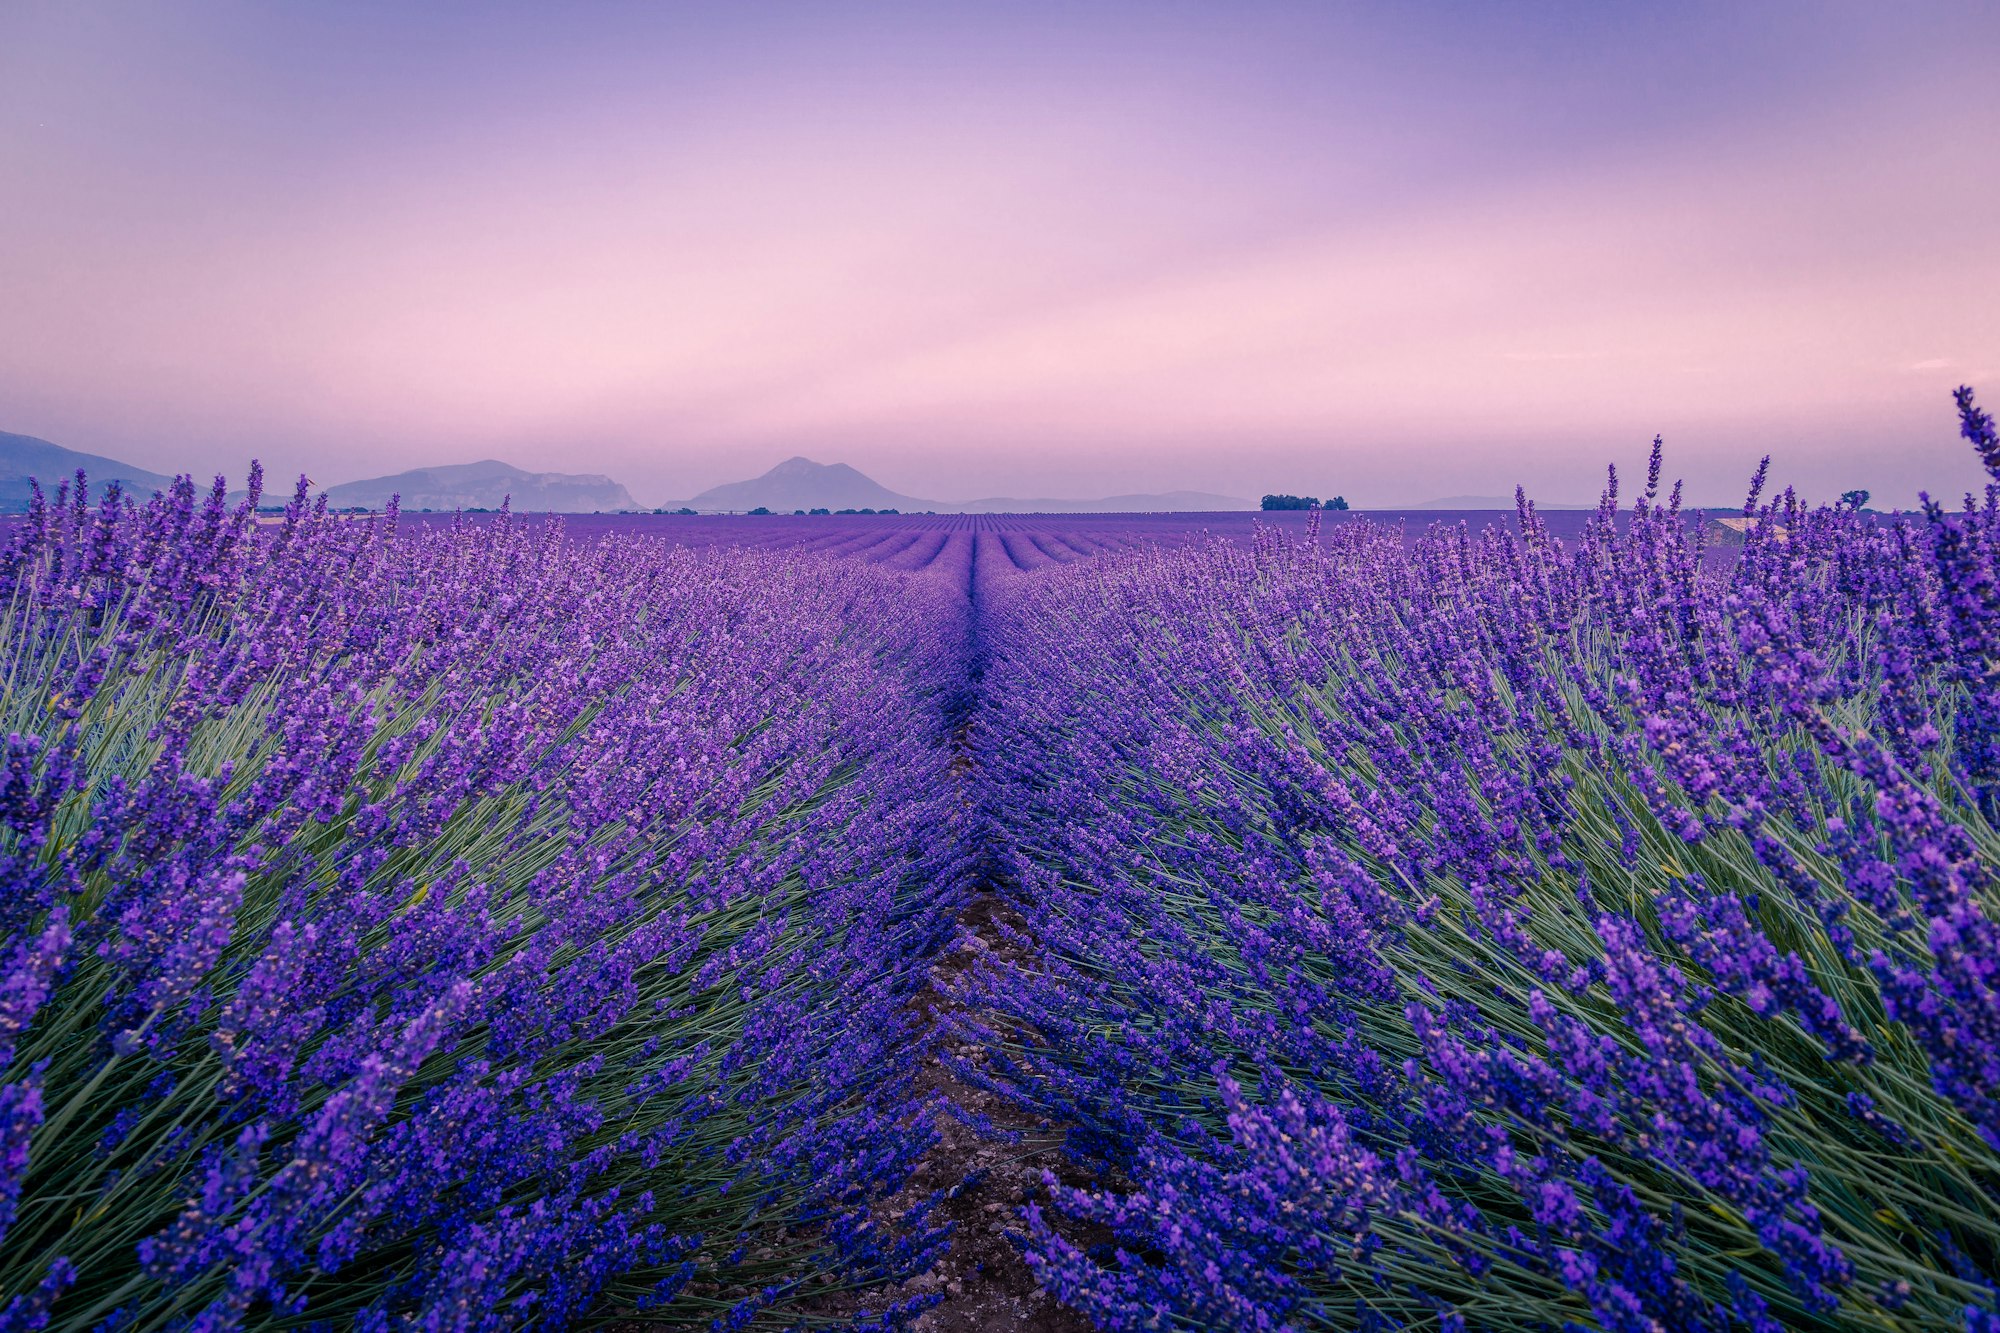 Lavander fields in Provence, France